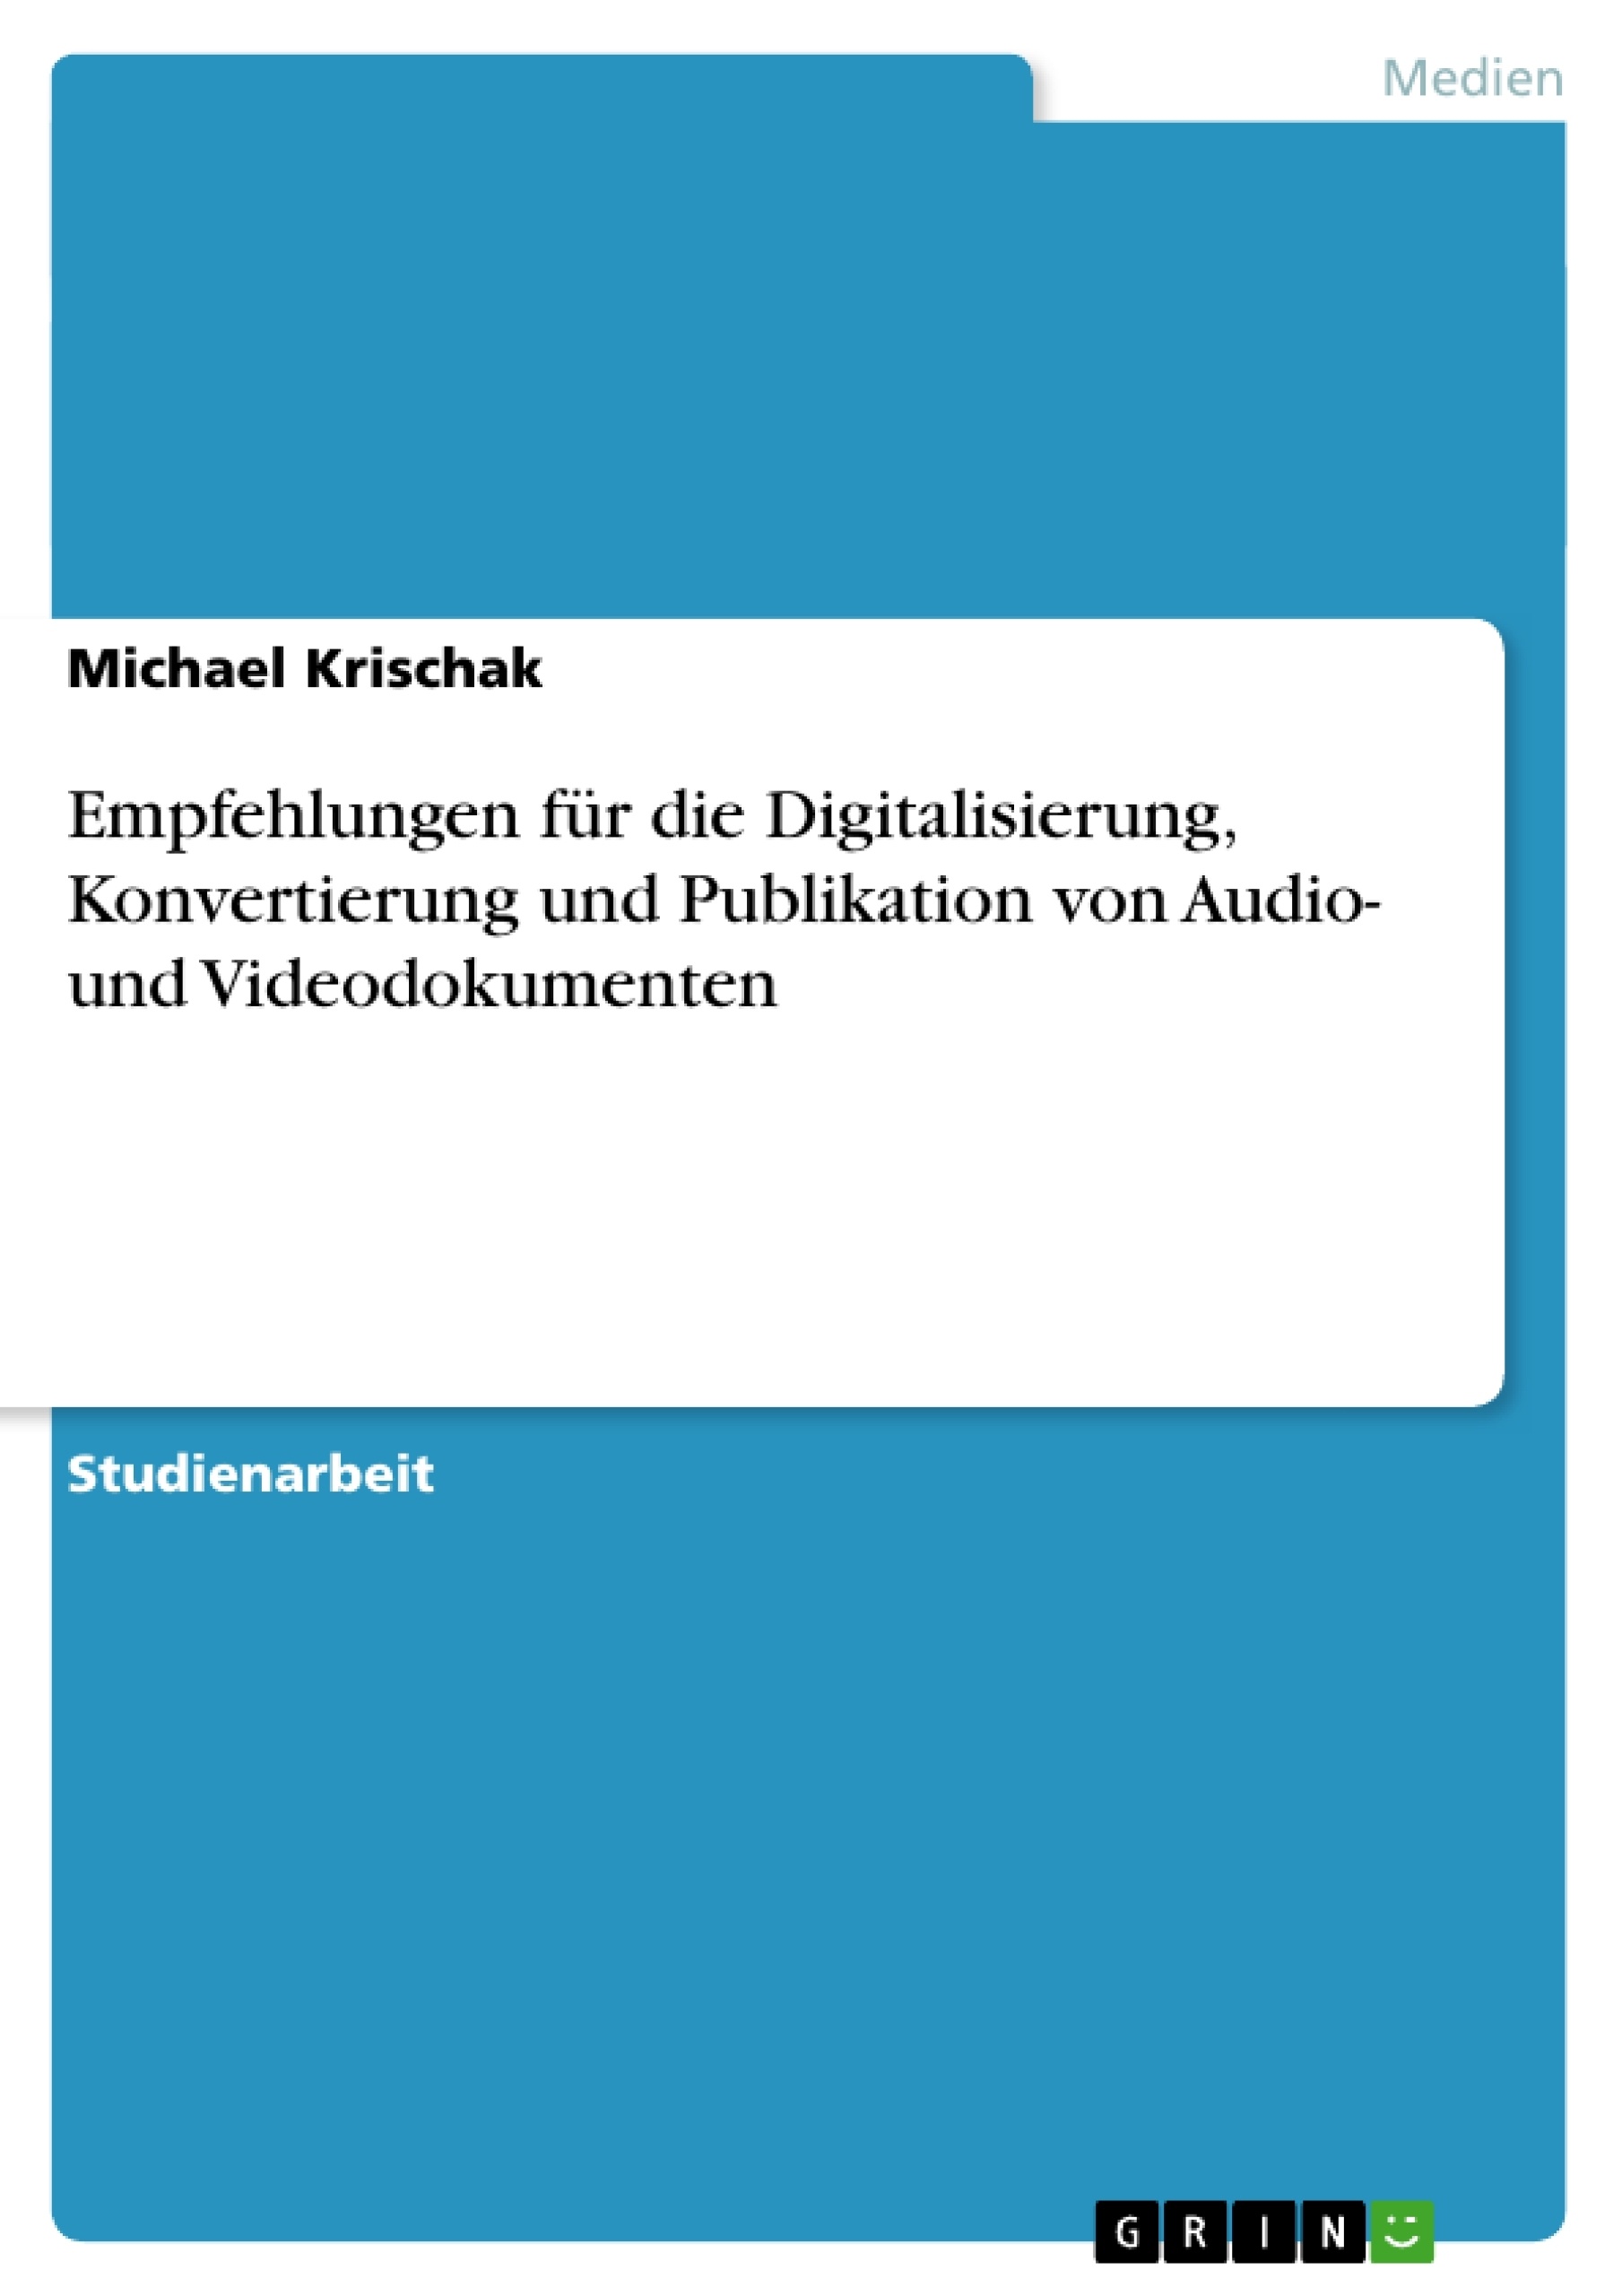 Title: Empfehlungen für die Digitalisierung, Konvertierung und Publikation von Audio- und Videodokumenten